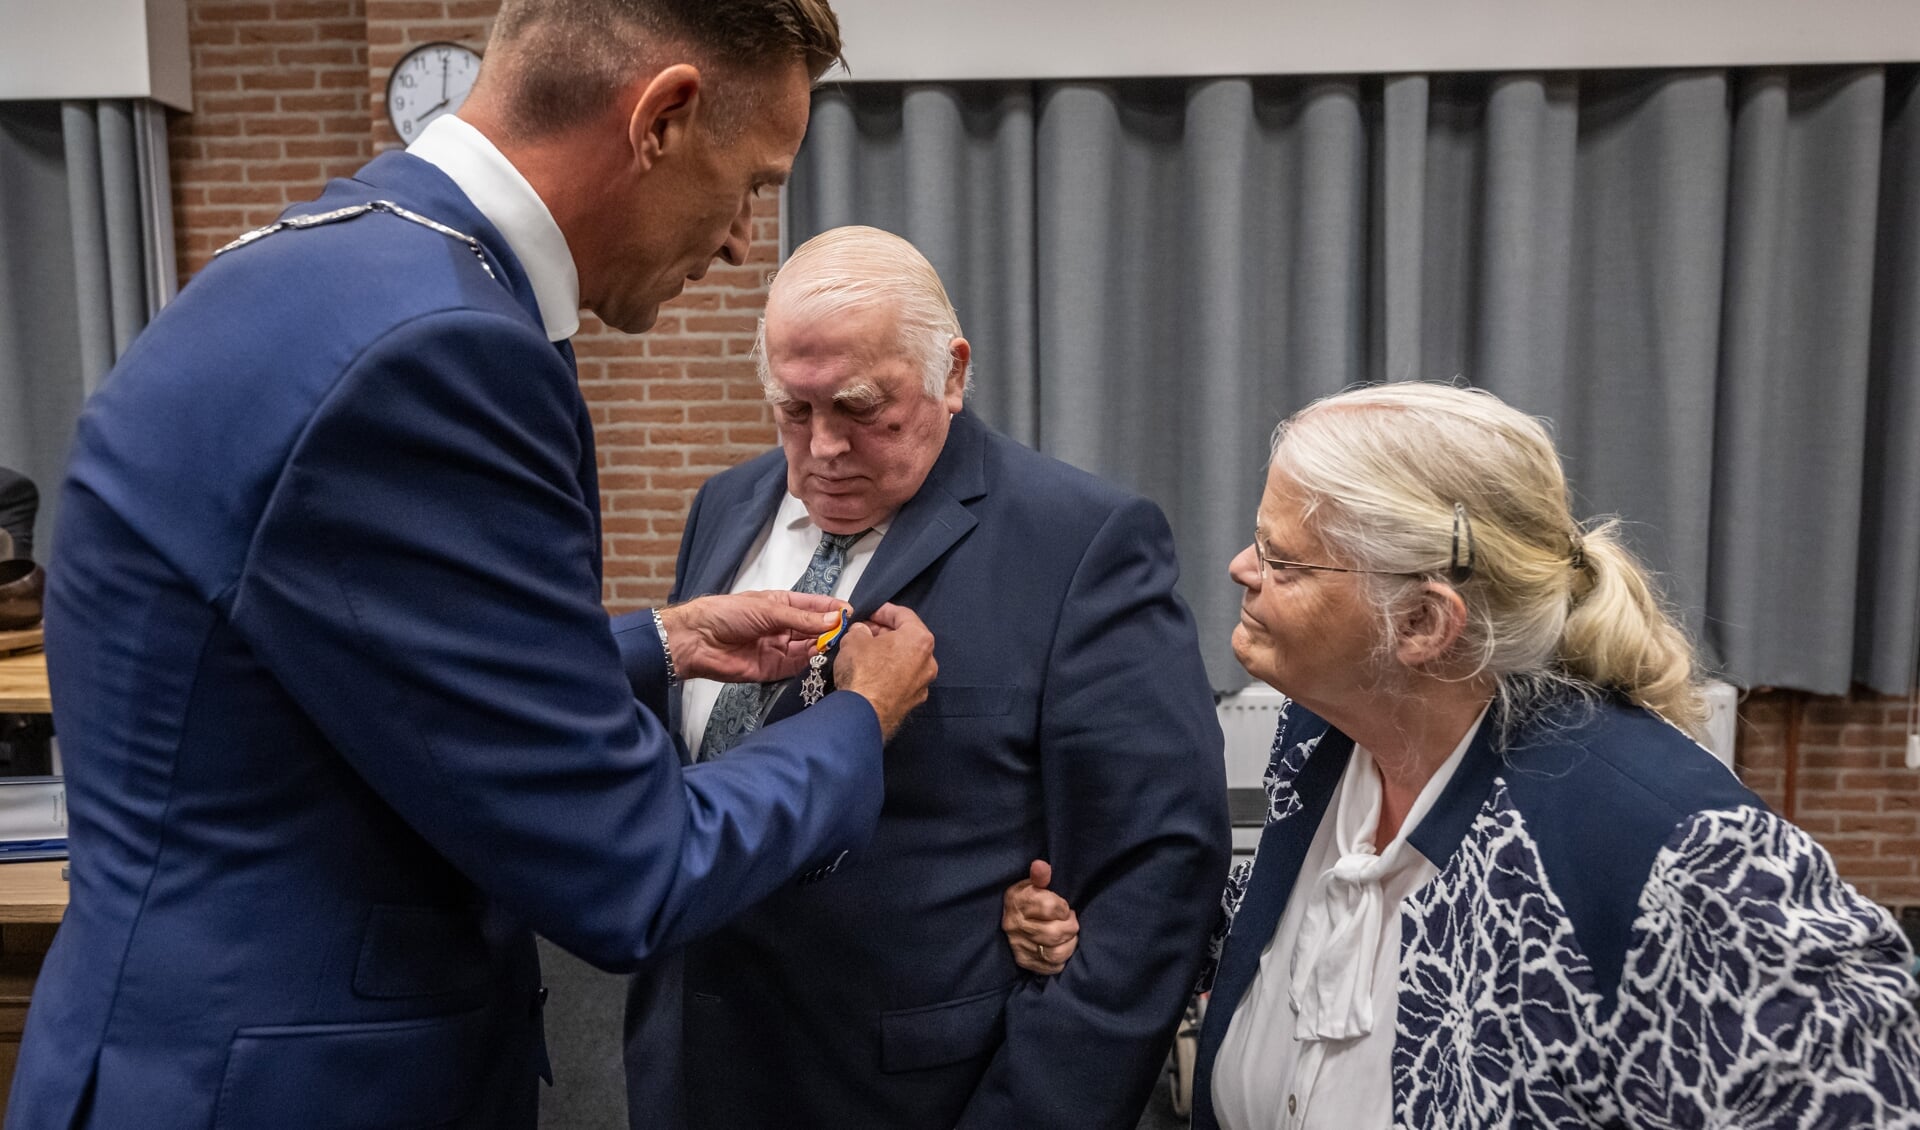 Dhr. M. Grinwis ontvangt uit handen van Locoburgemeester Daan Markwat een Koninklijke onderscheiding.